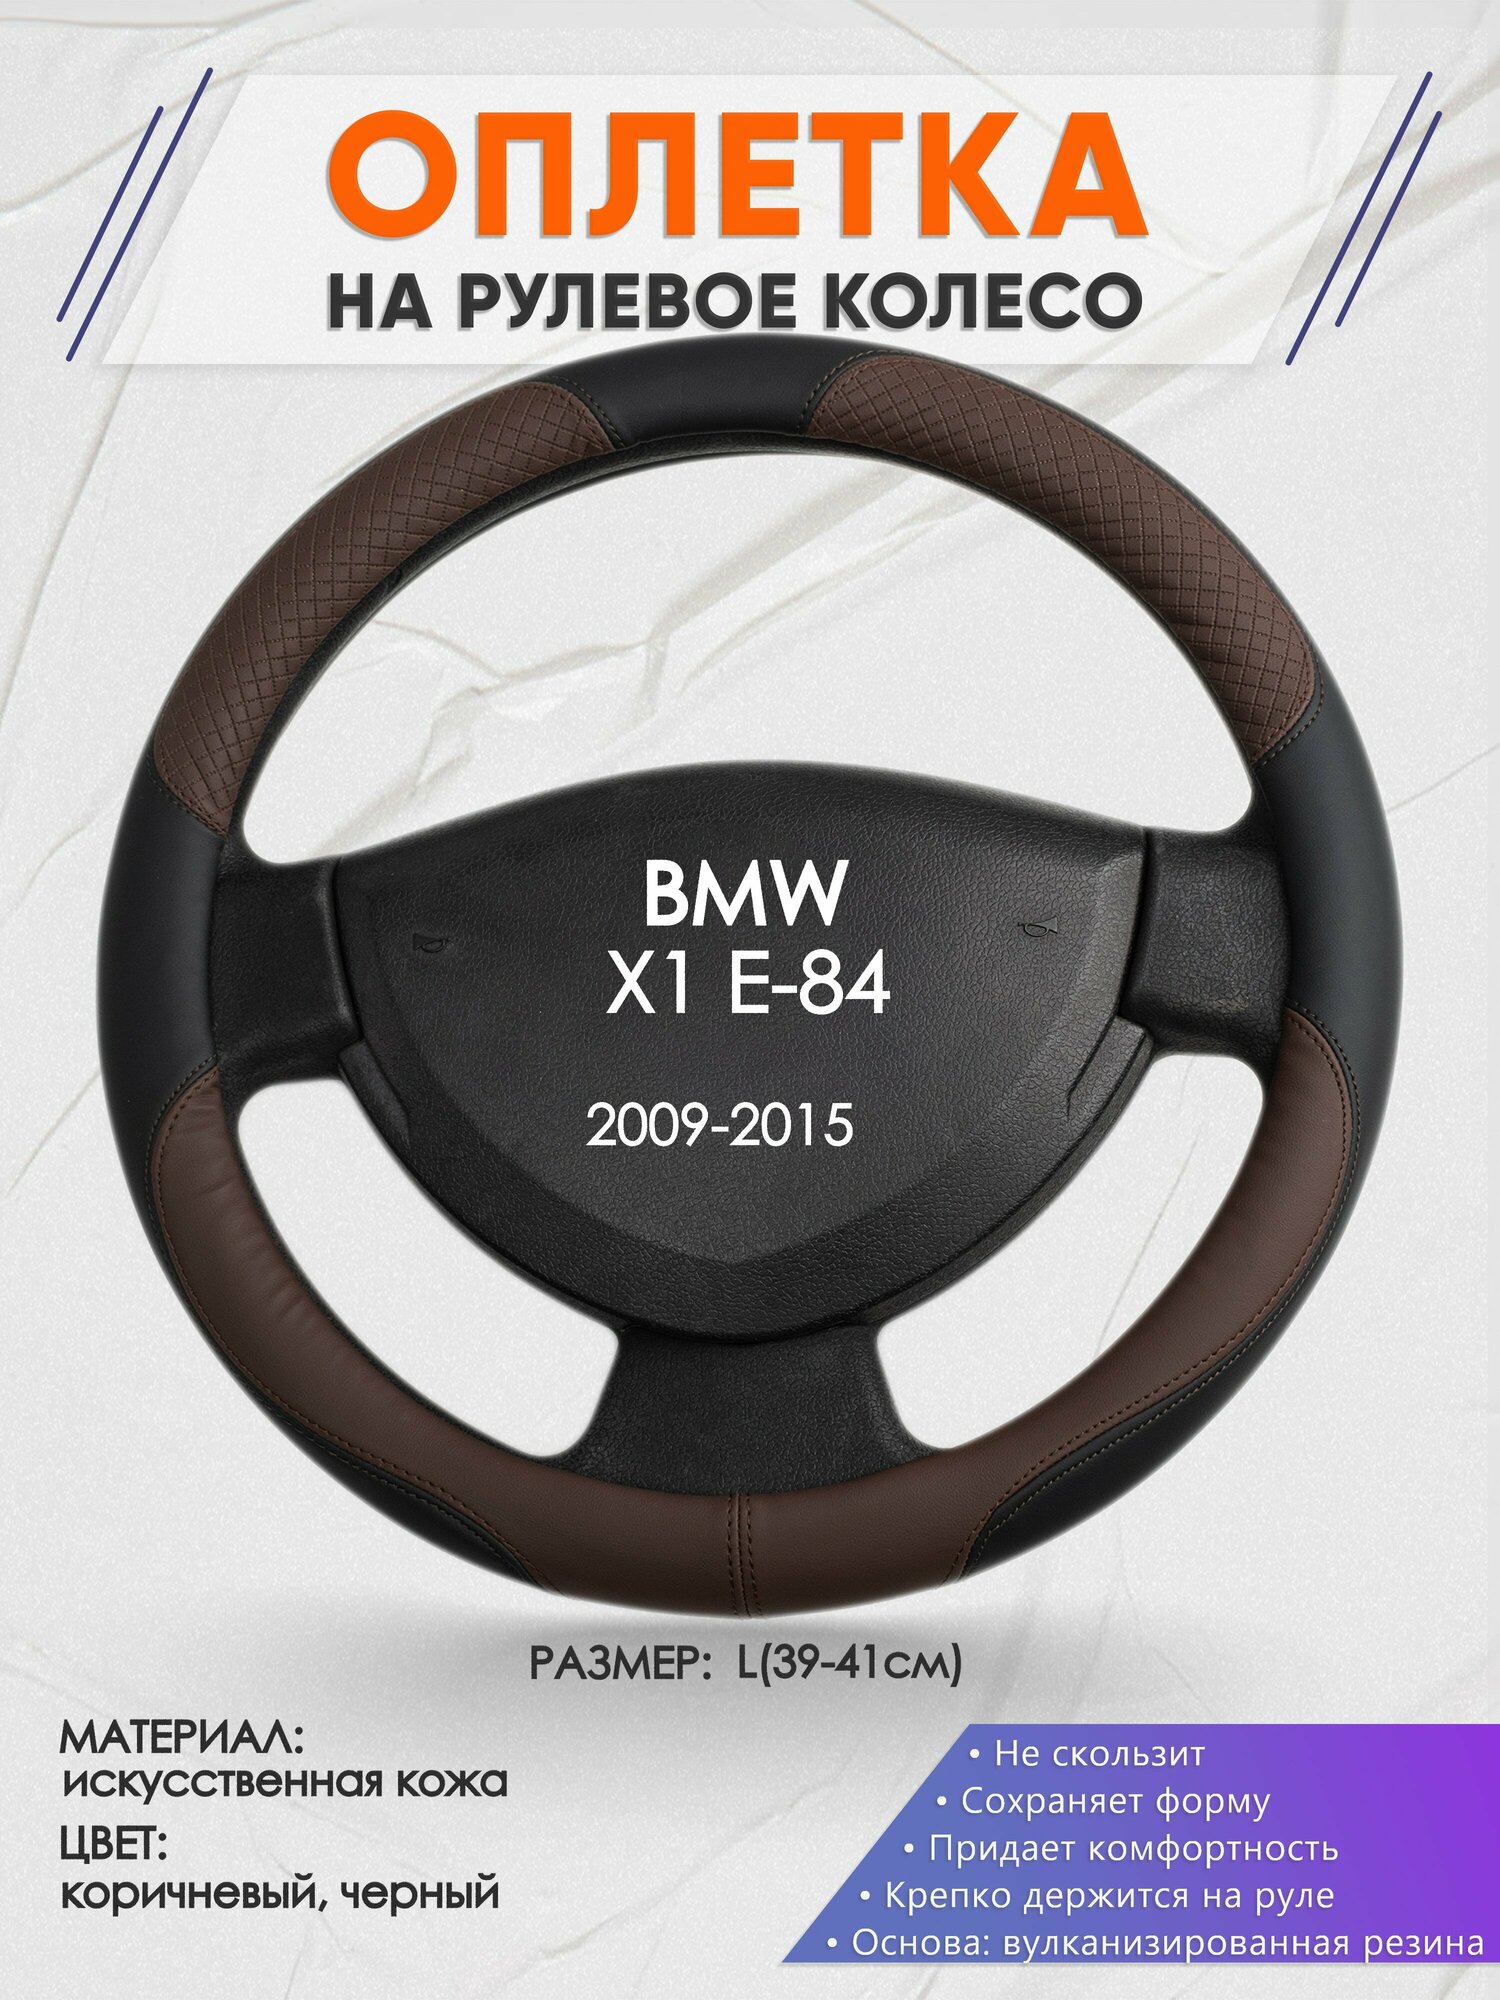 Оплетка на руль для BMW X1 E-84(БМВ икс 1 е84) 2009-2015 L(39-41см) Искусственная кожа 18